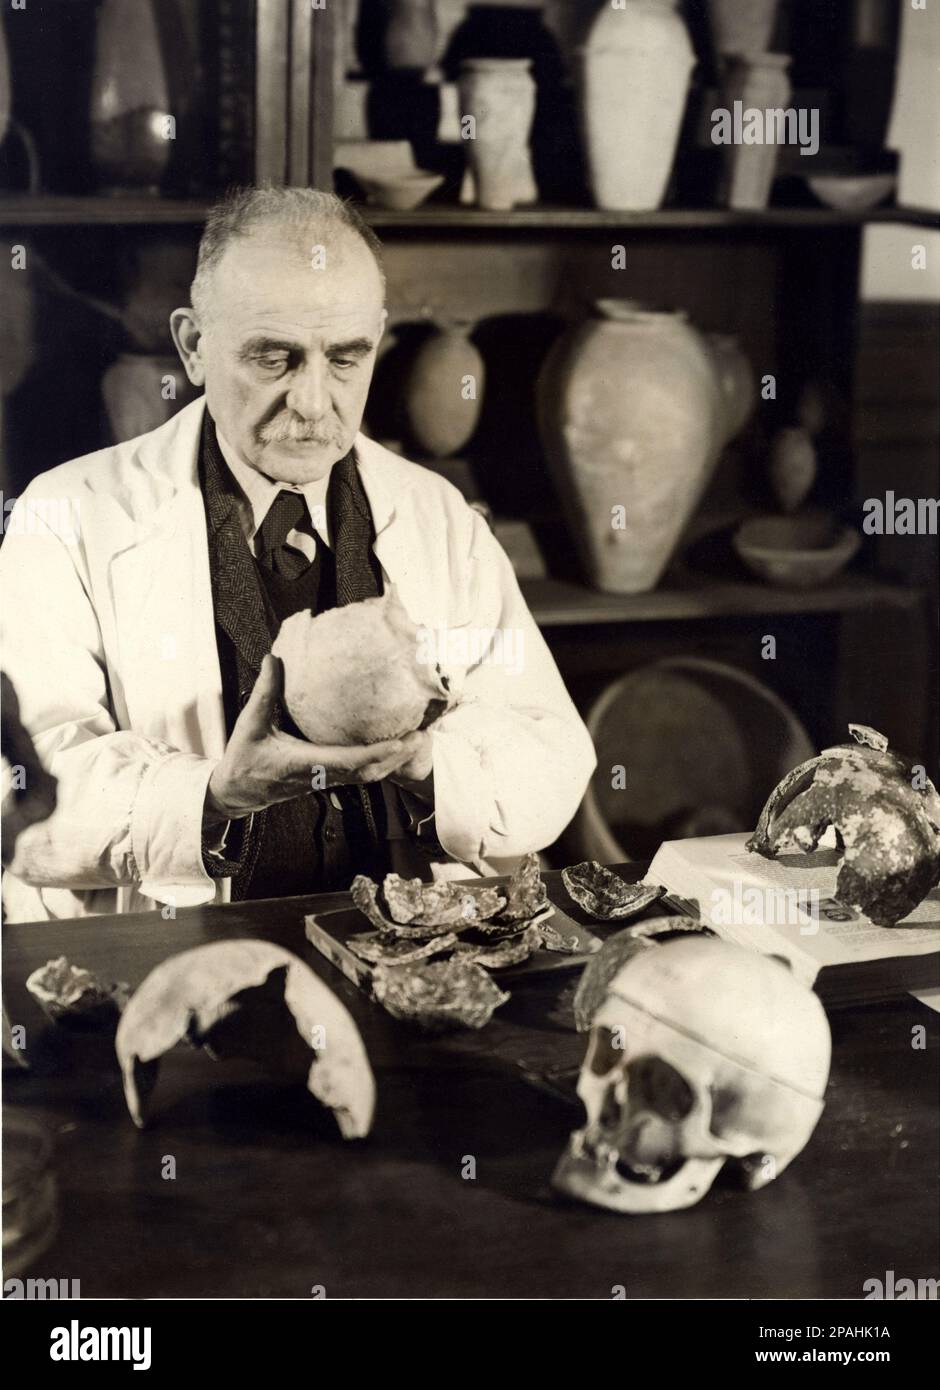 1941 , dicembre , TORINO , ITALIA : il Professor Senstore GIOVANNI MARRO ( Limone Piemonte (CN) 1875 - Torino 1952 ) nel suo laboratorio di MUSEO DI TORINO esaminano le ossa teschi dolicocefalo di preistorici trova nel promontorio DEL GARGANO ( Puglia - Puglia ) Marro si laureò in Medicina e Chirurgia, fu diretto del laboratorio di anatomia dell'Ospedale Psichiatrico di Collegno (TO) e in seguito diretto dei quattro istitutti psichiatrici di Torino. Dal 1911, su invito dell’egittologo Ernesto Schiaparelli, partecipò come antropologo alla missione Archeologica italiana in Egitto. Riuscito Foto Stock